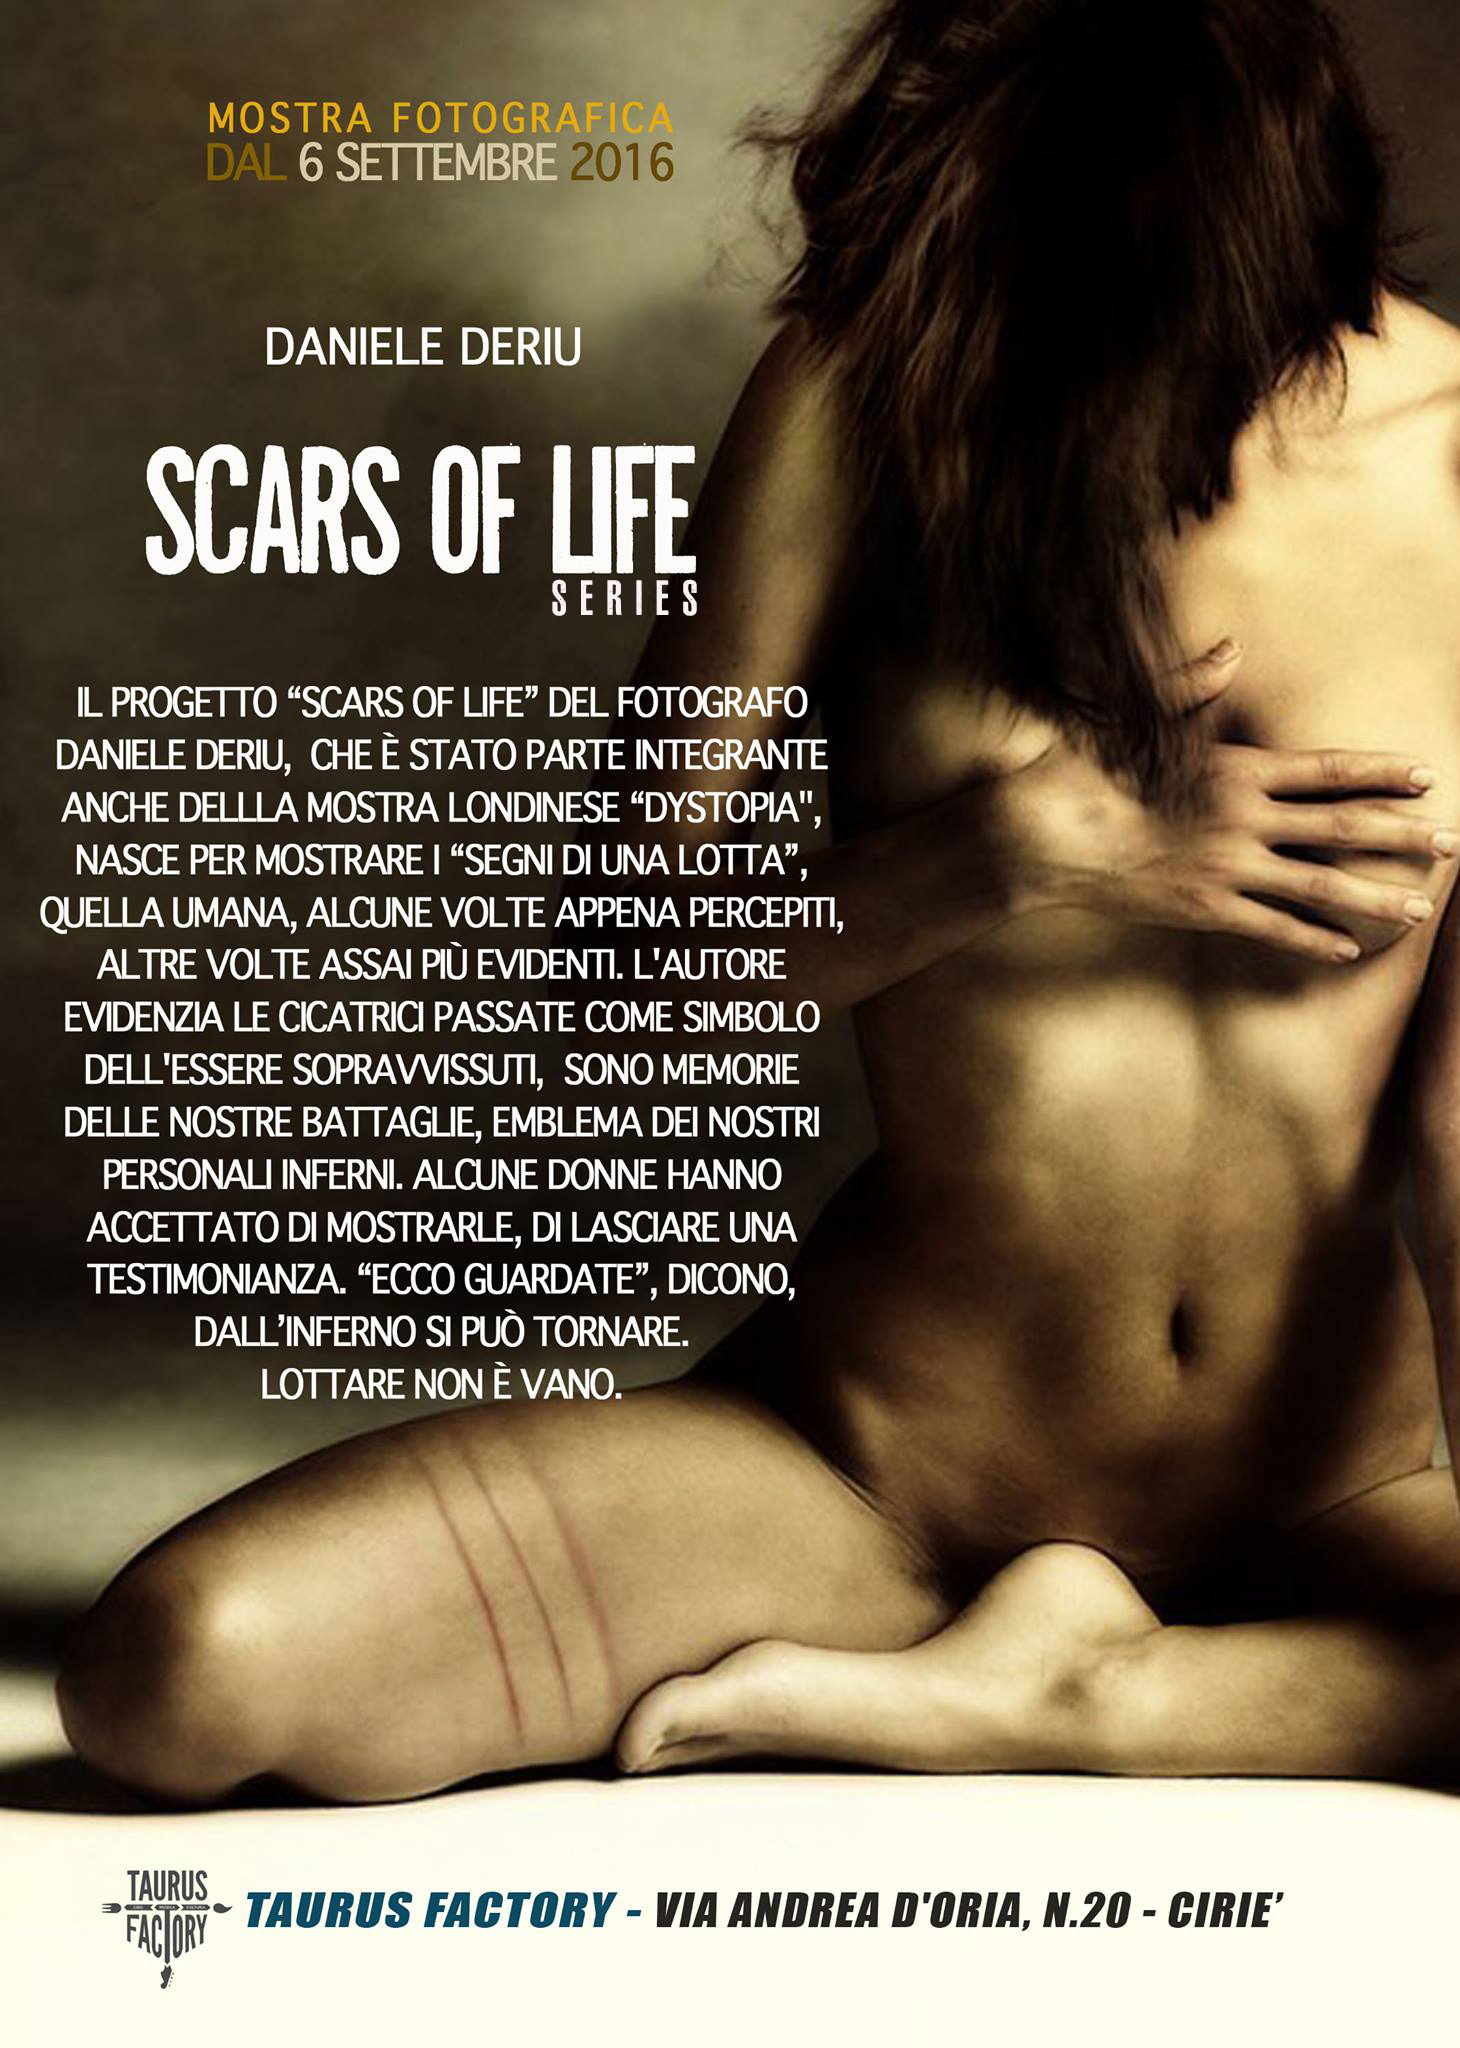 La serie “Scars of life” di Daniele Deriu a Torino